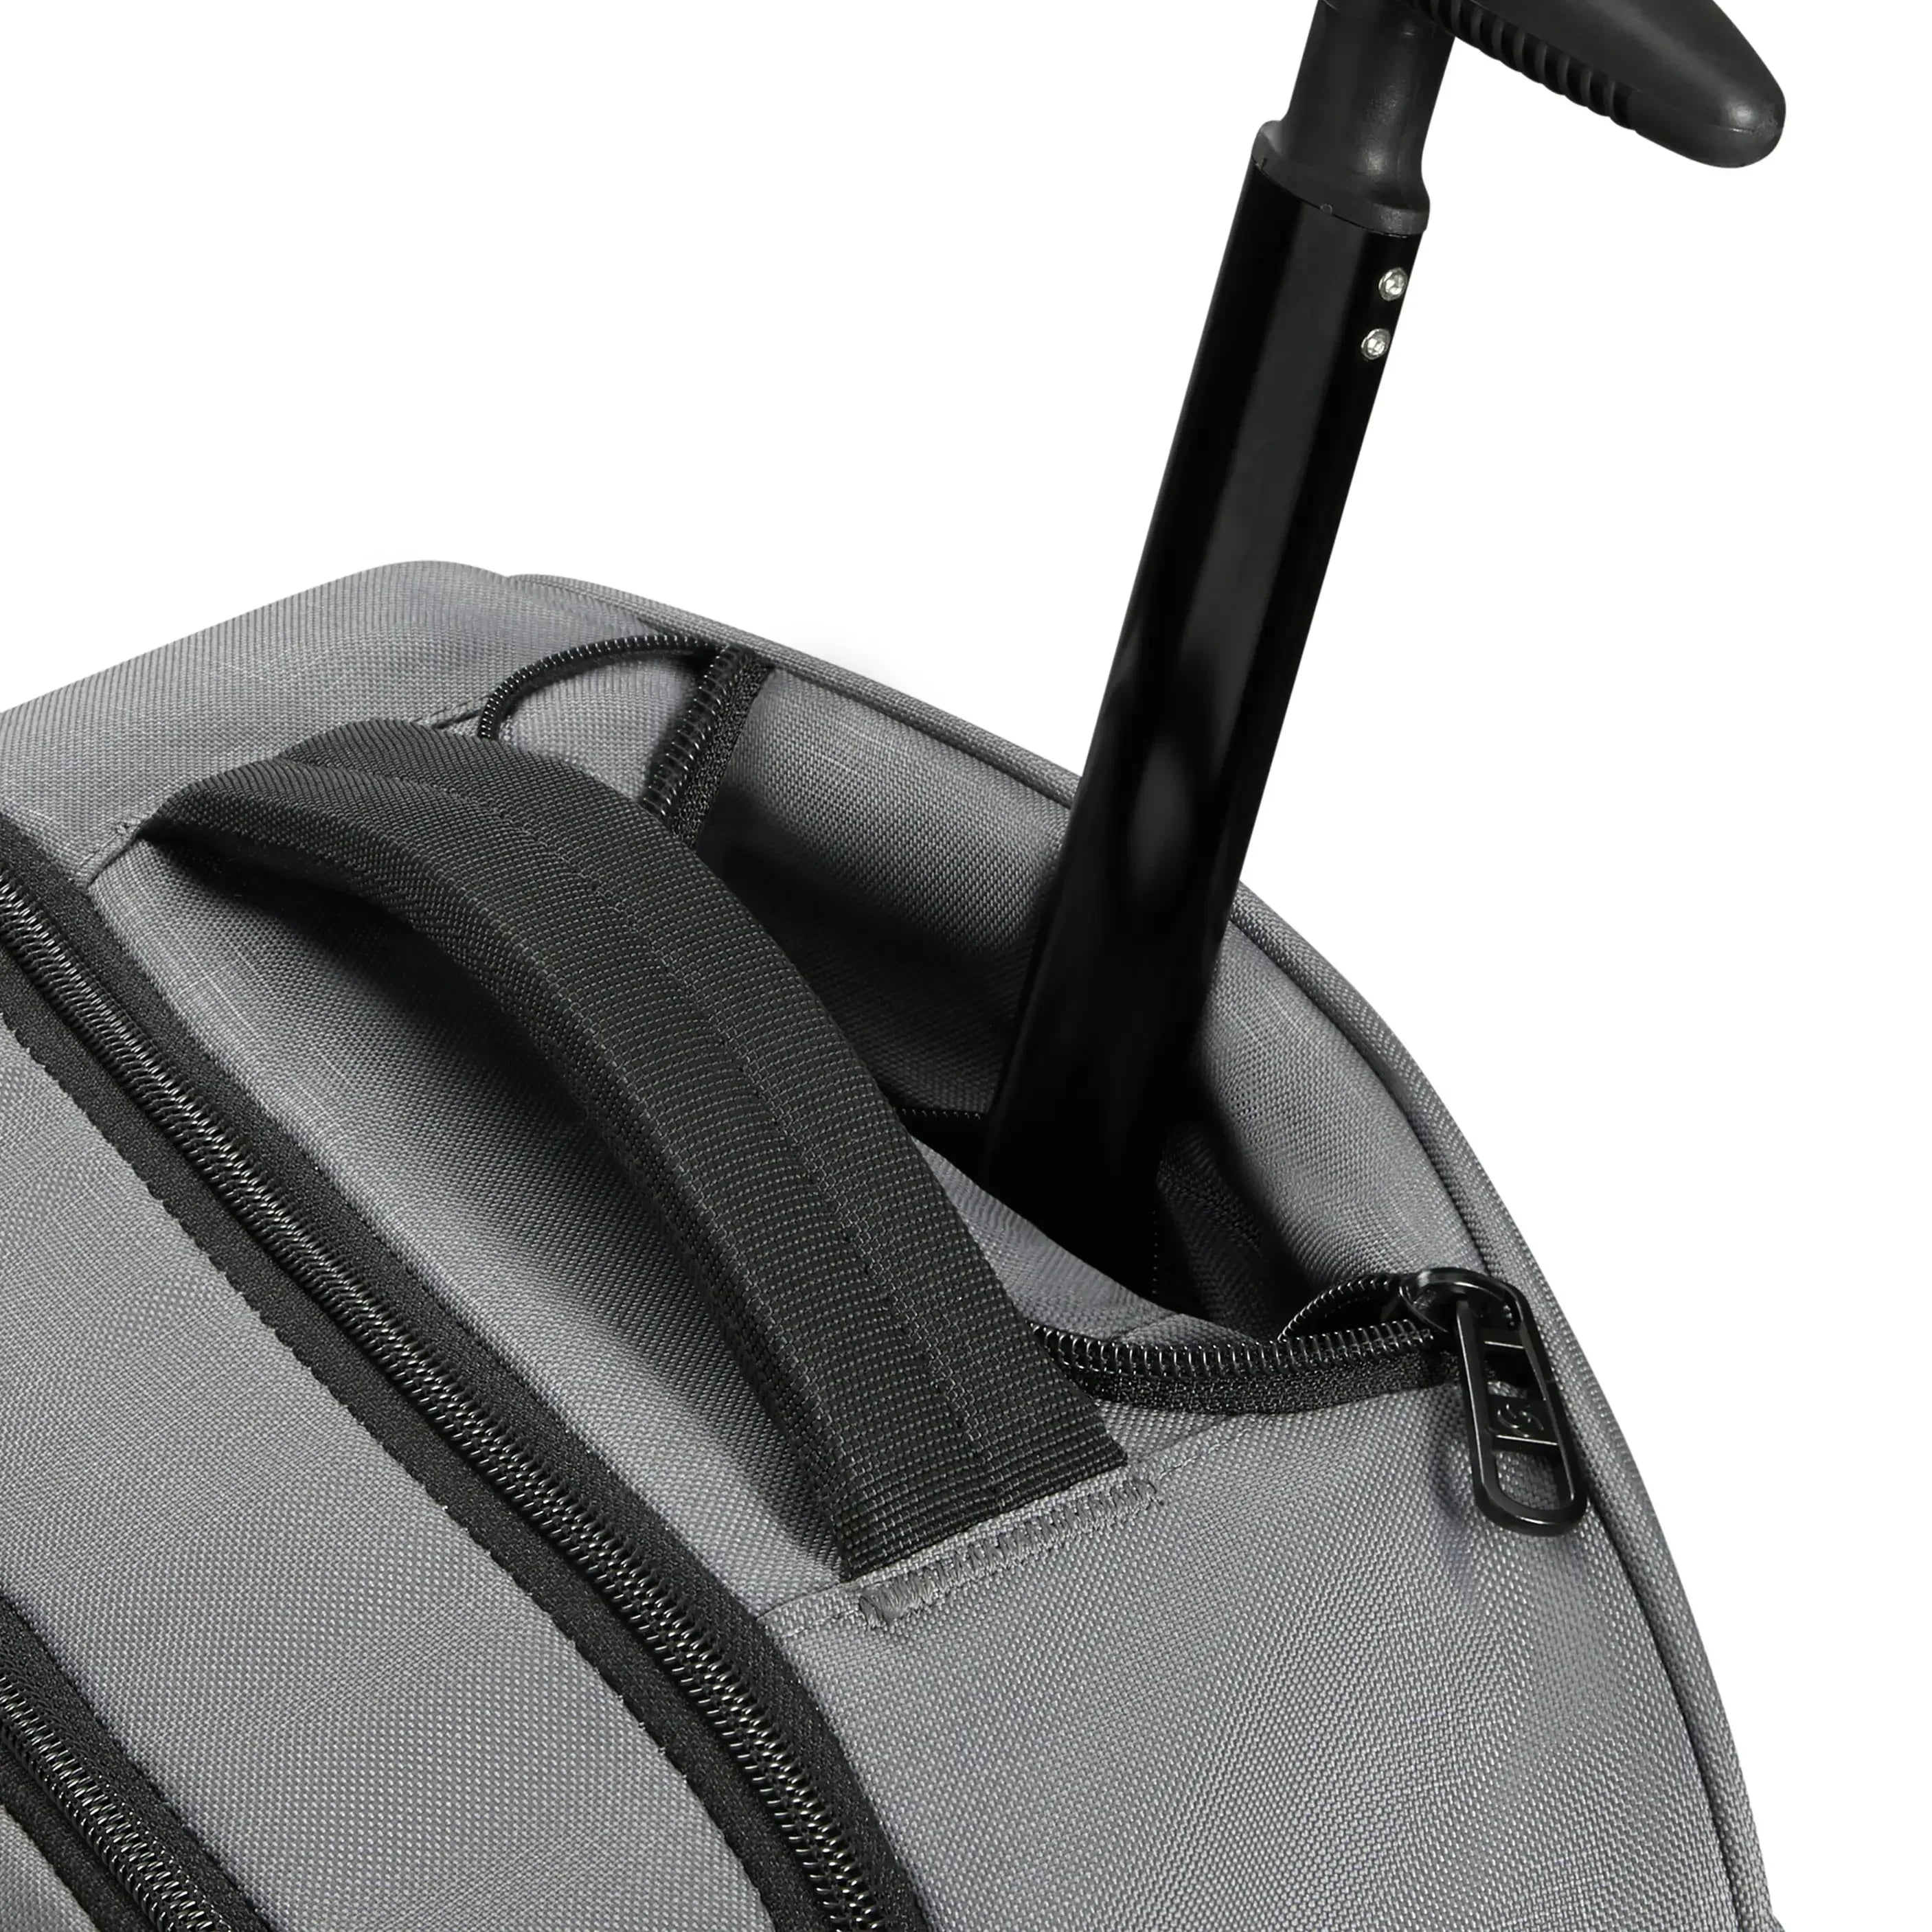 Samsonite Roader sac à dos pour ordinateur portable à roulettes 55 cm - noir profond